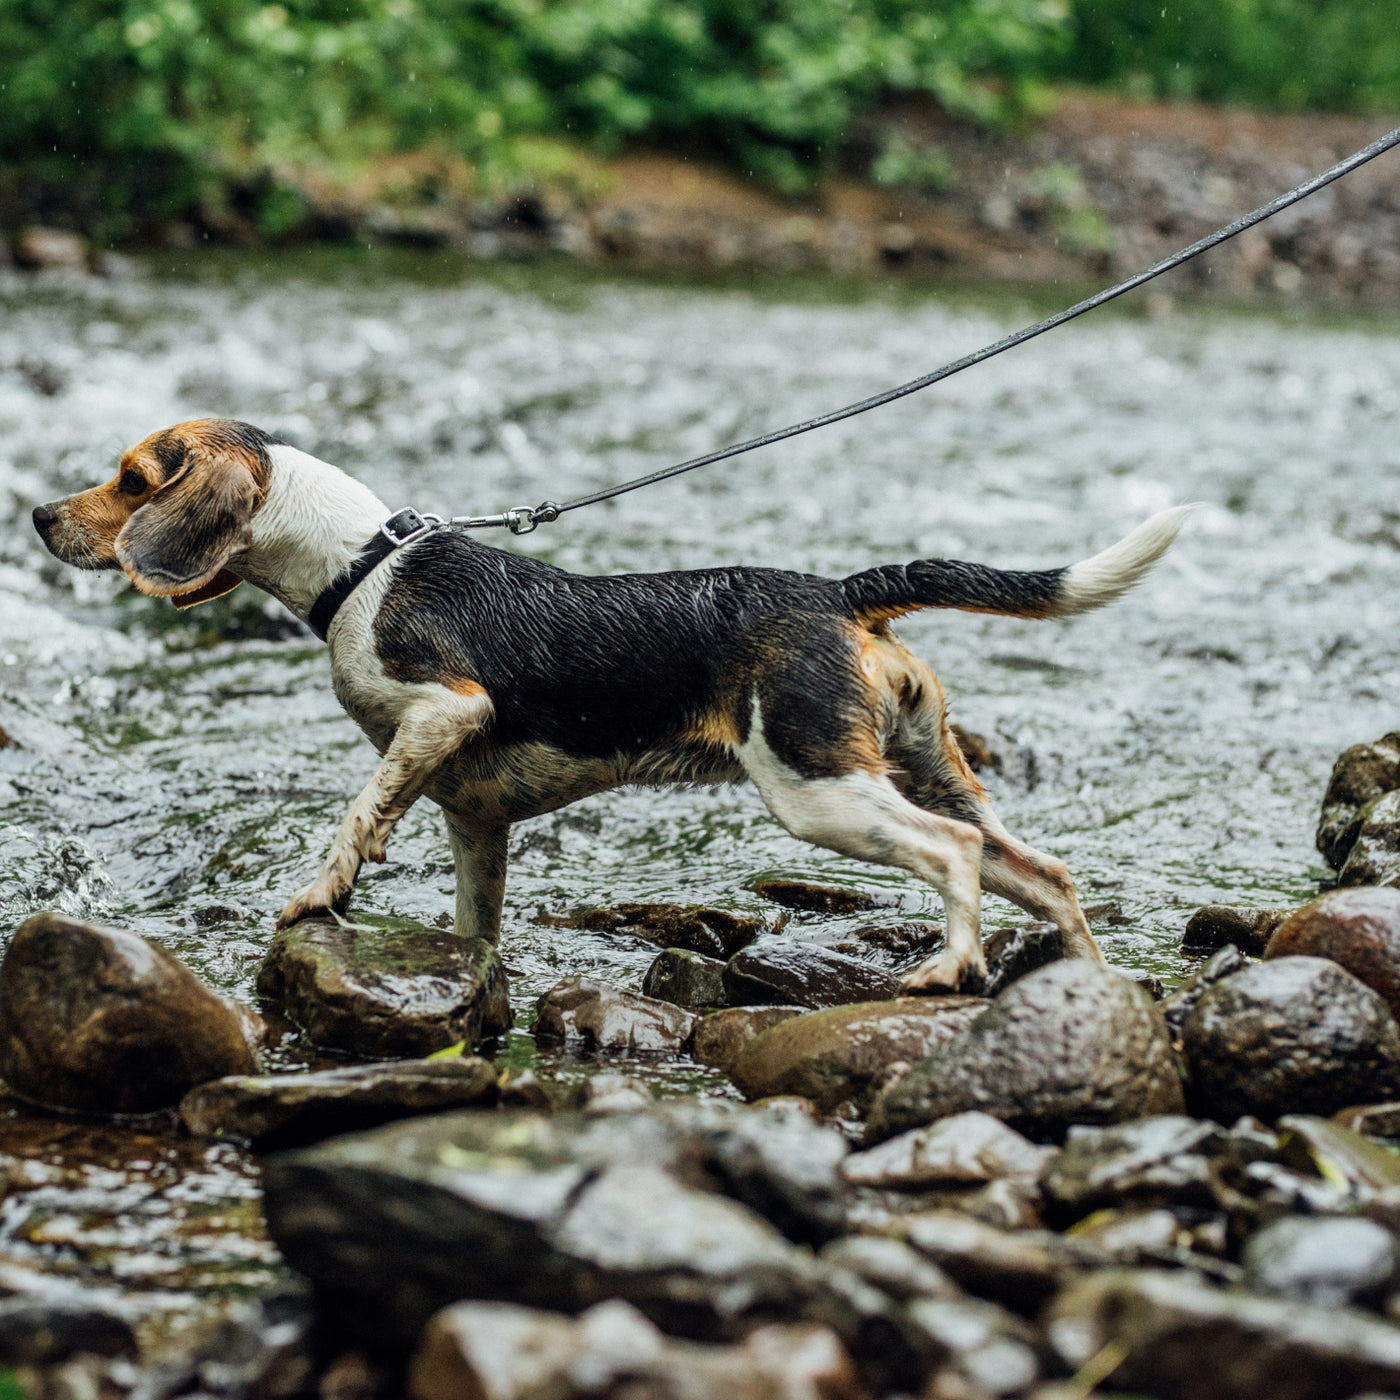 Beagle on leash walking in water